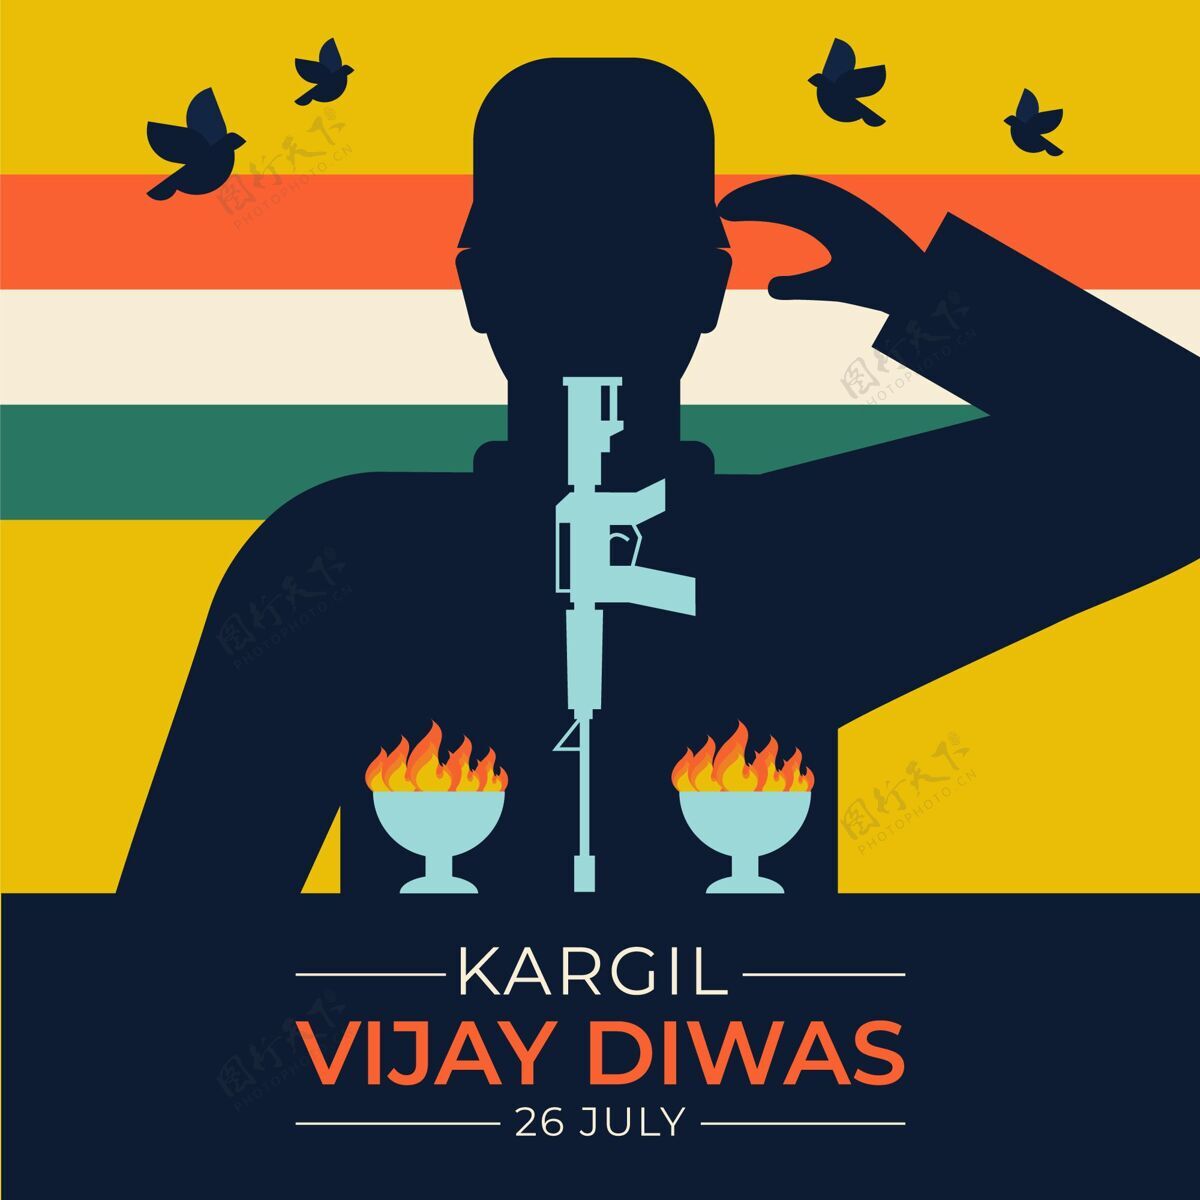 骄傲卡吉尔·维杰·迪瓦兹公寓的插图活动印度印度